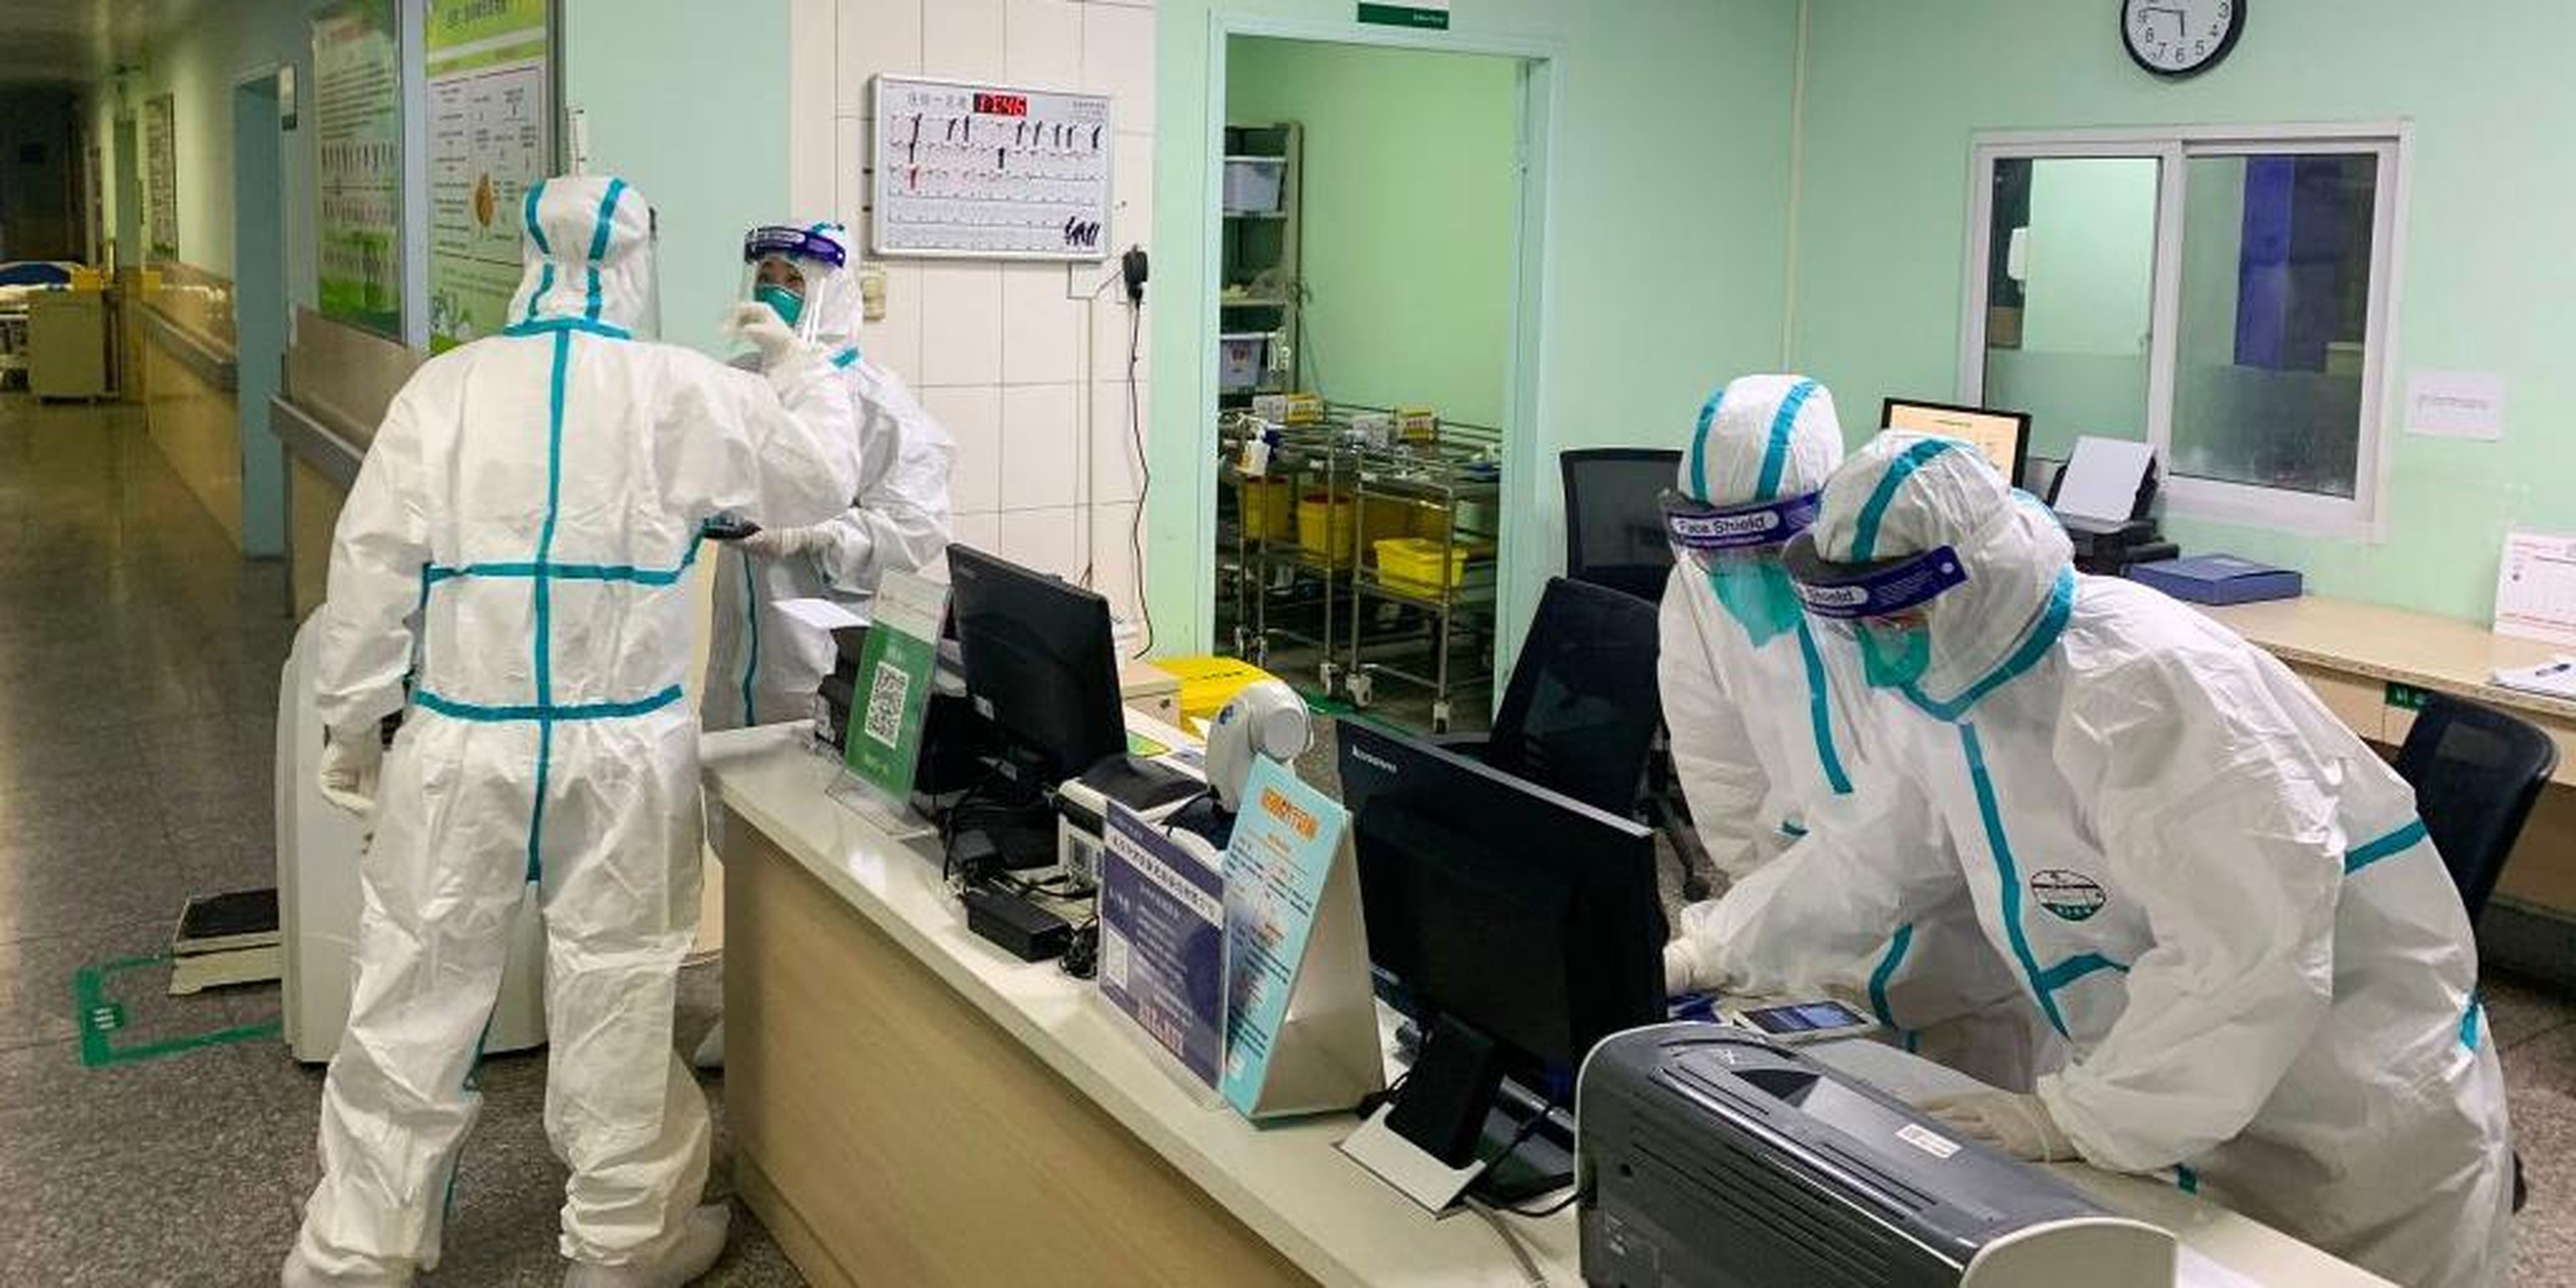 La foto del 22 de enero muestra a miembros del personal médico del hospital Zhongnan, Wuhan, con trajes protectores.